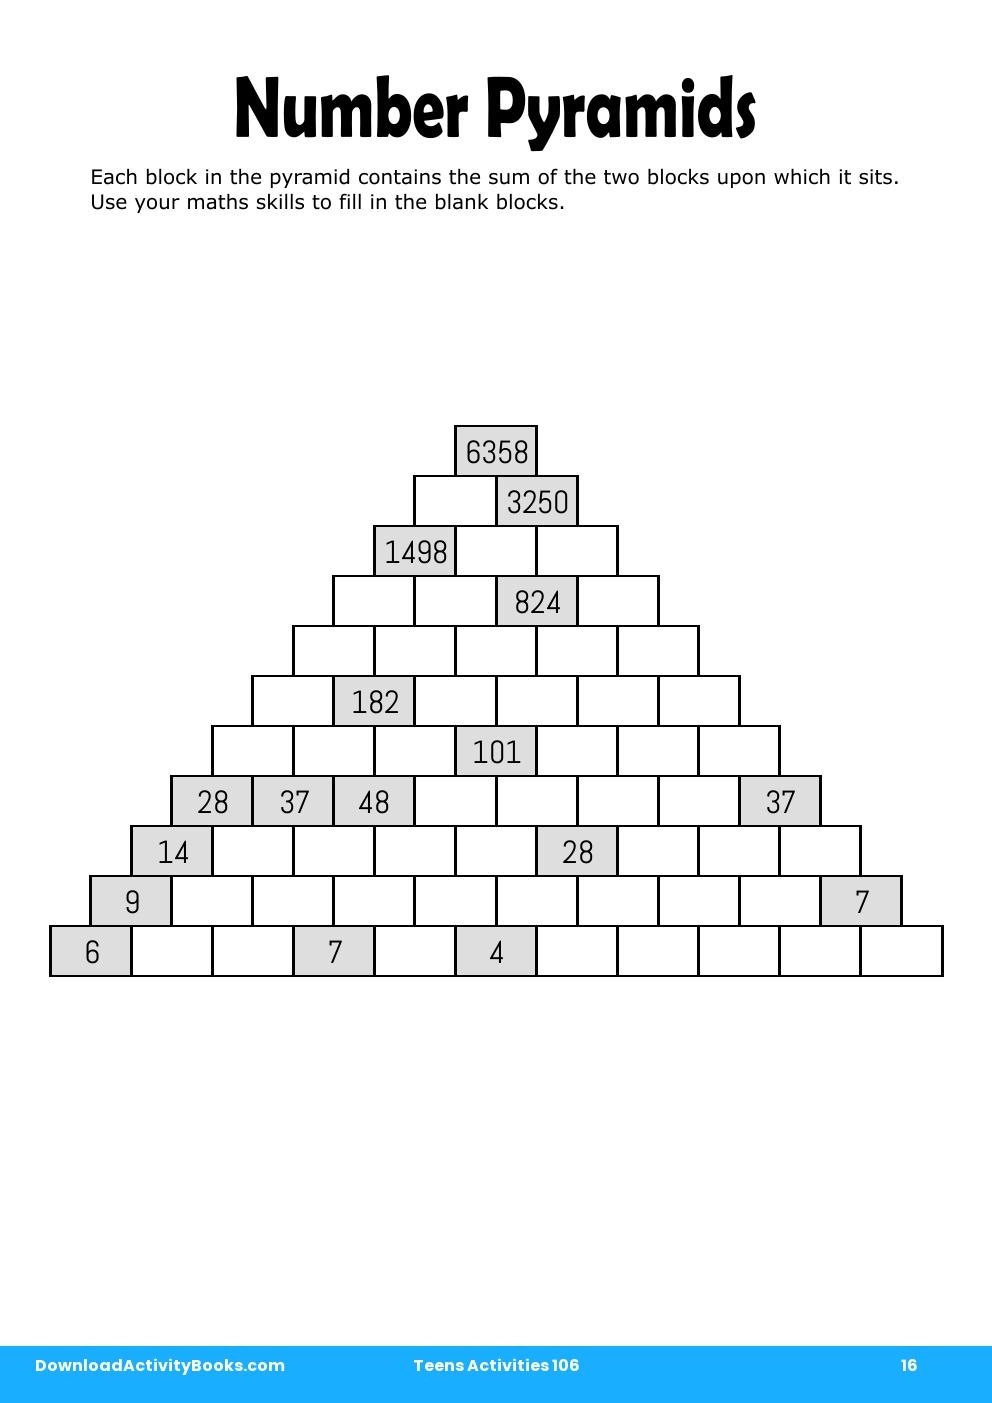 Number Pyramids in Teens Activities 106